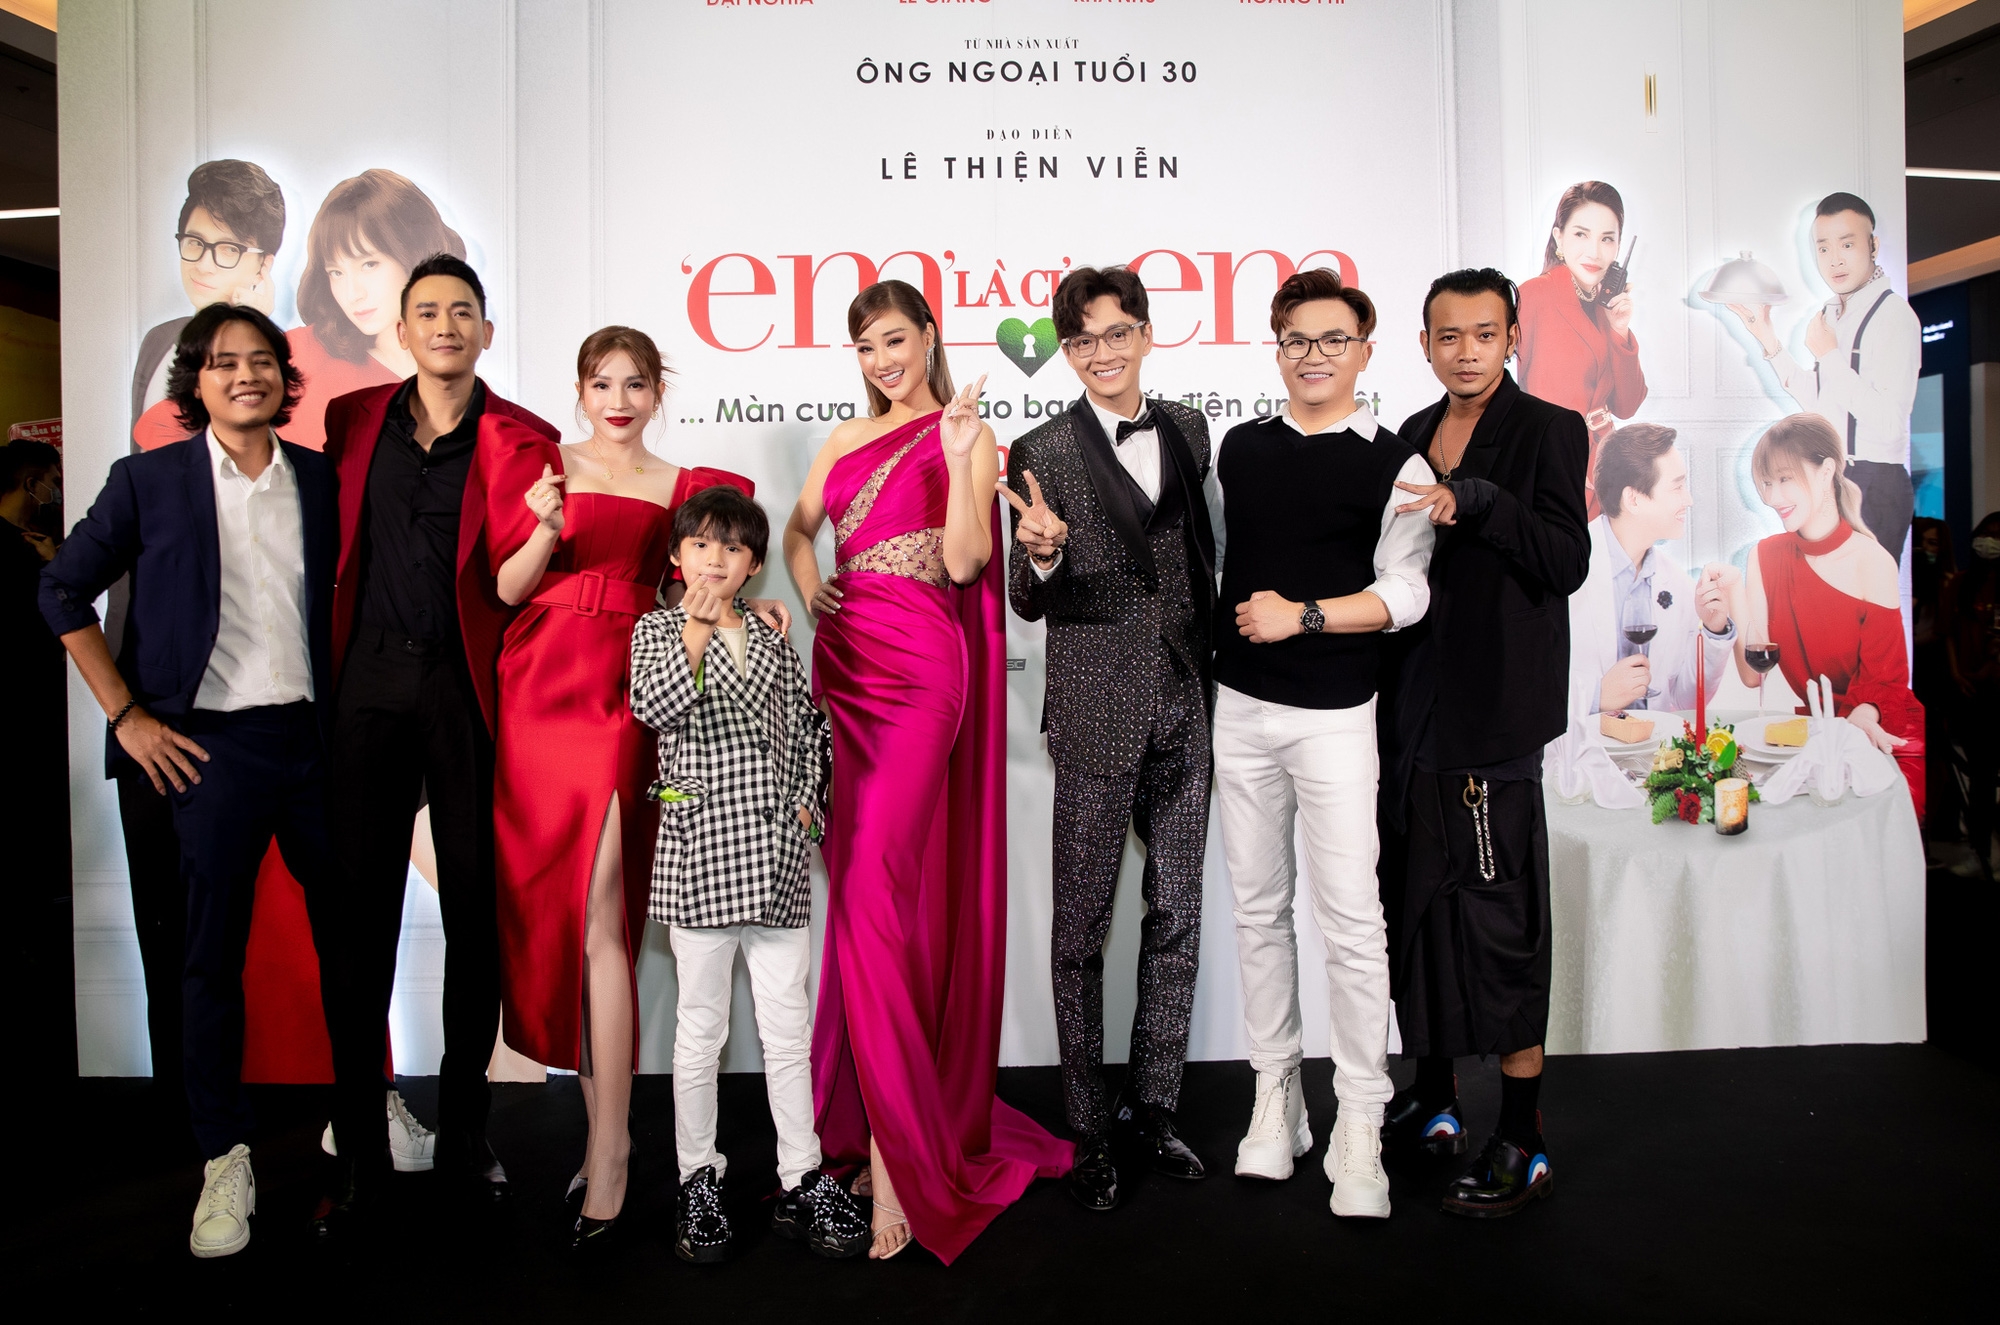 Ngọc Trinh cùng top 3 Hoa hậu Việt Nam rạng rỡ trên thảm đỏ ra mắt phim  - Ảnh 8.